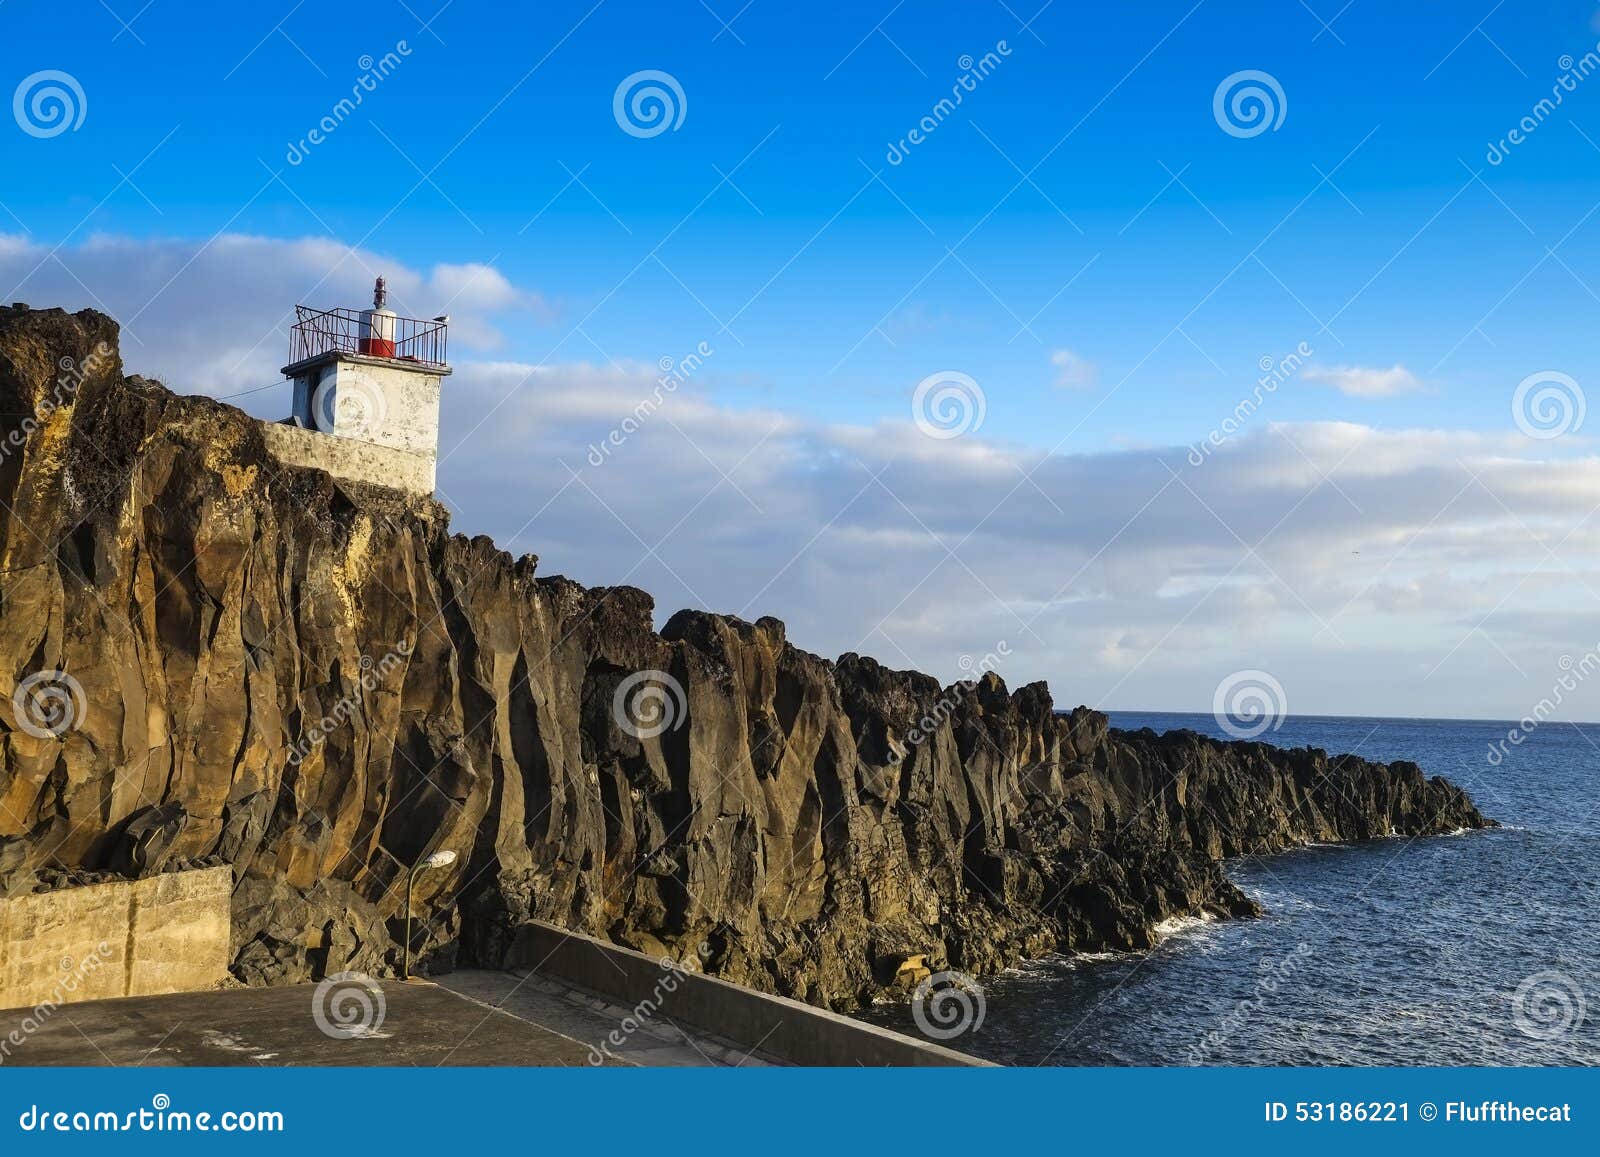 farol de camara de lobos, small lighthouse on madeira island